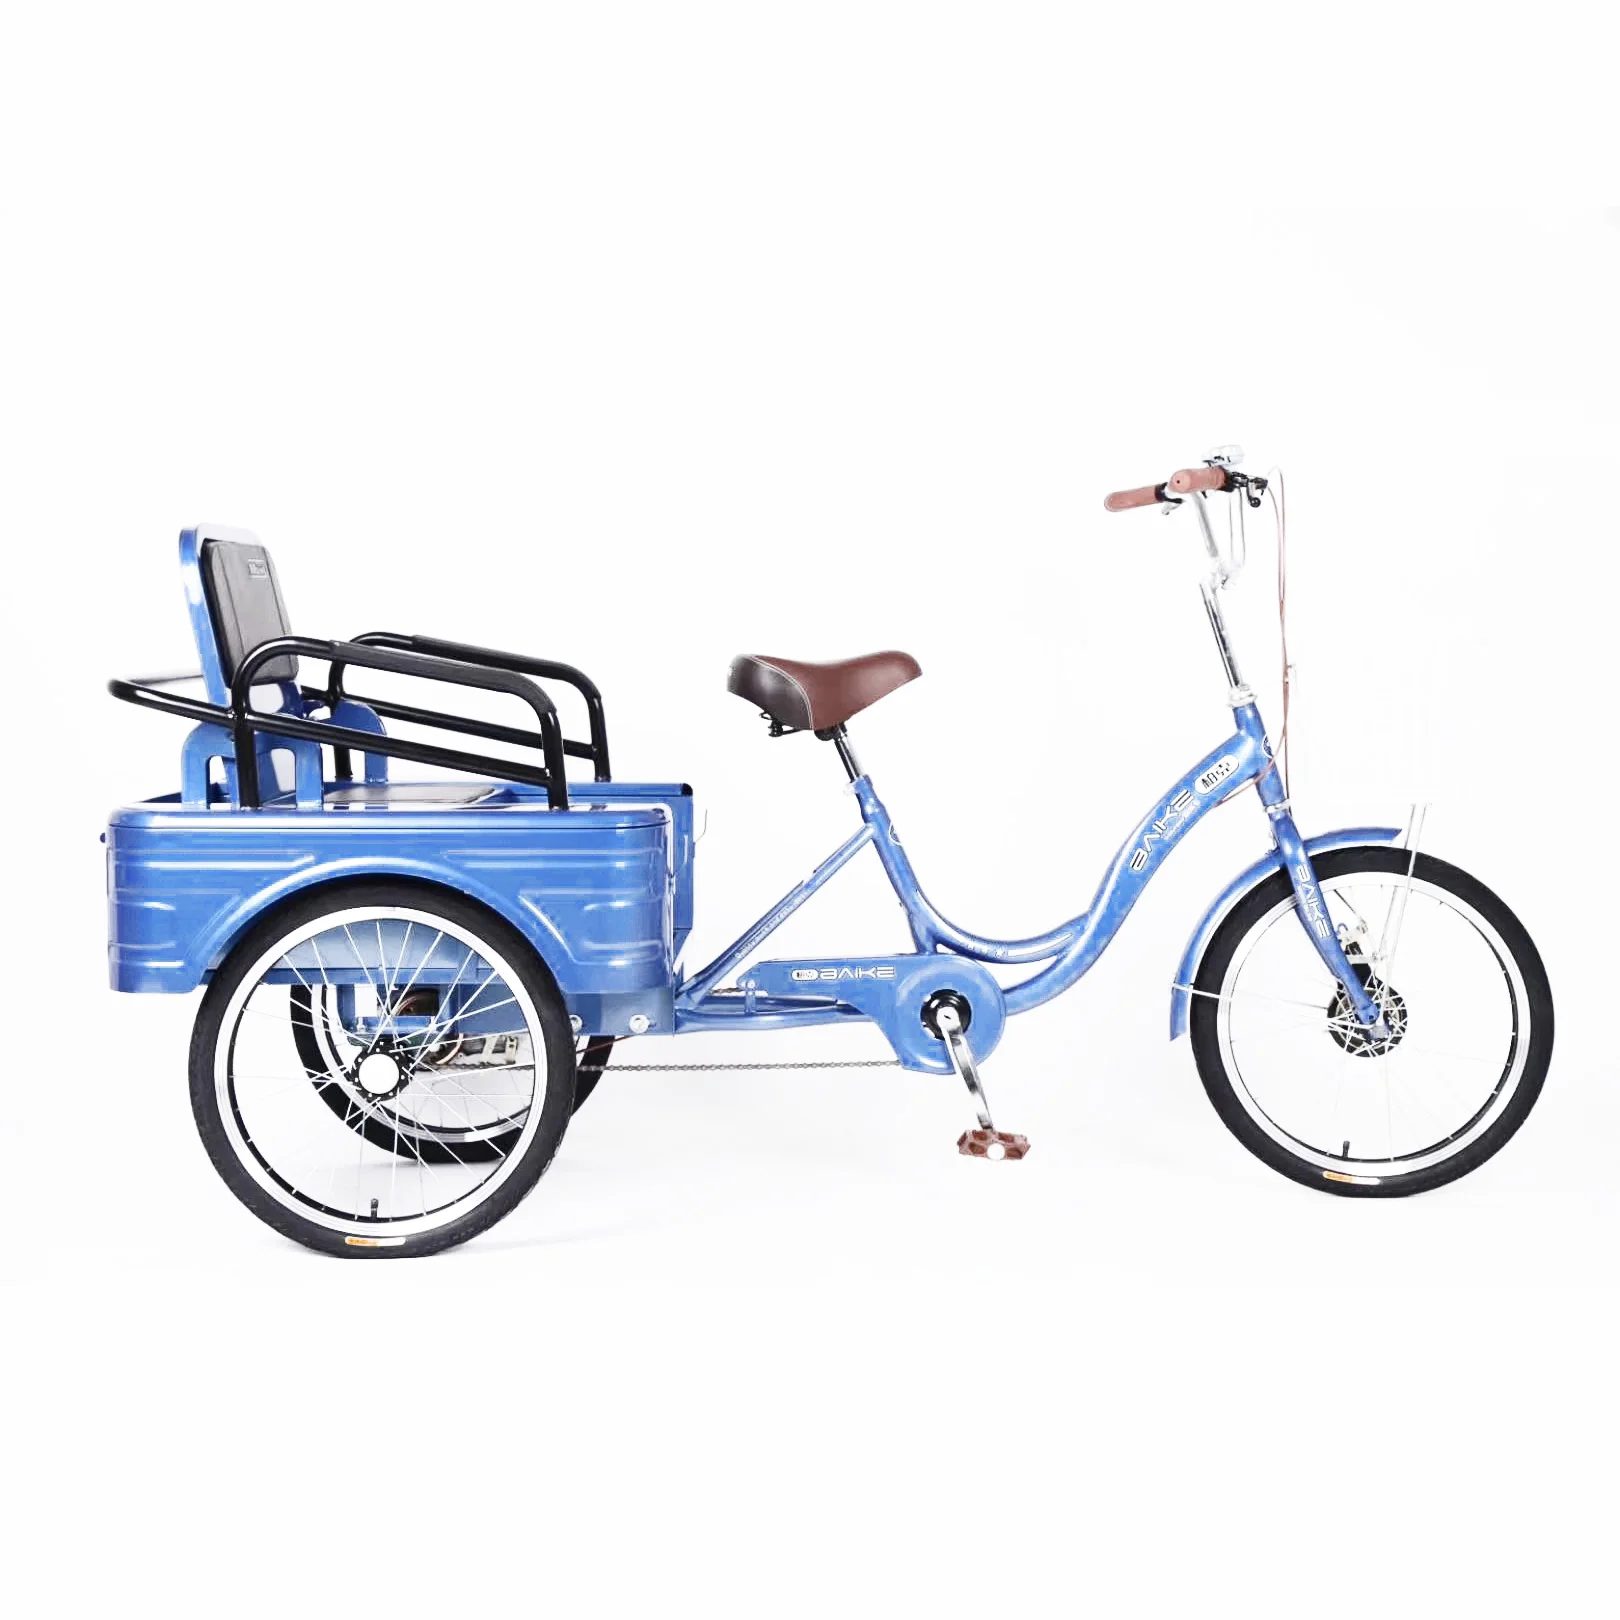 pashley bikes ebay